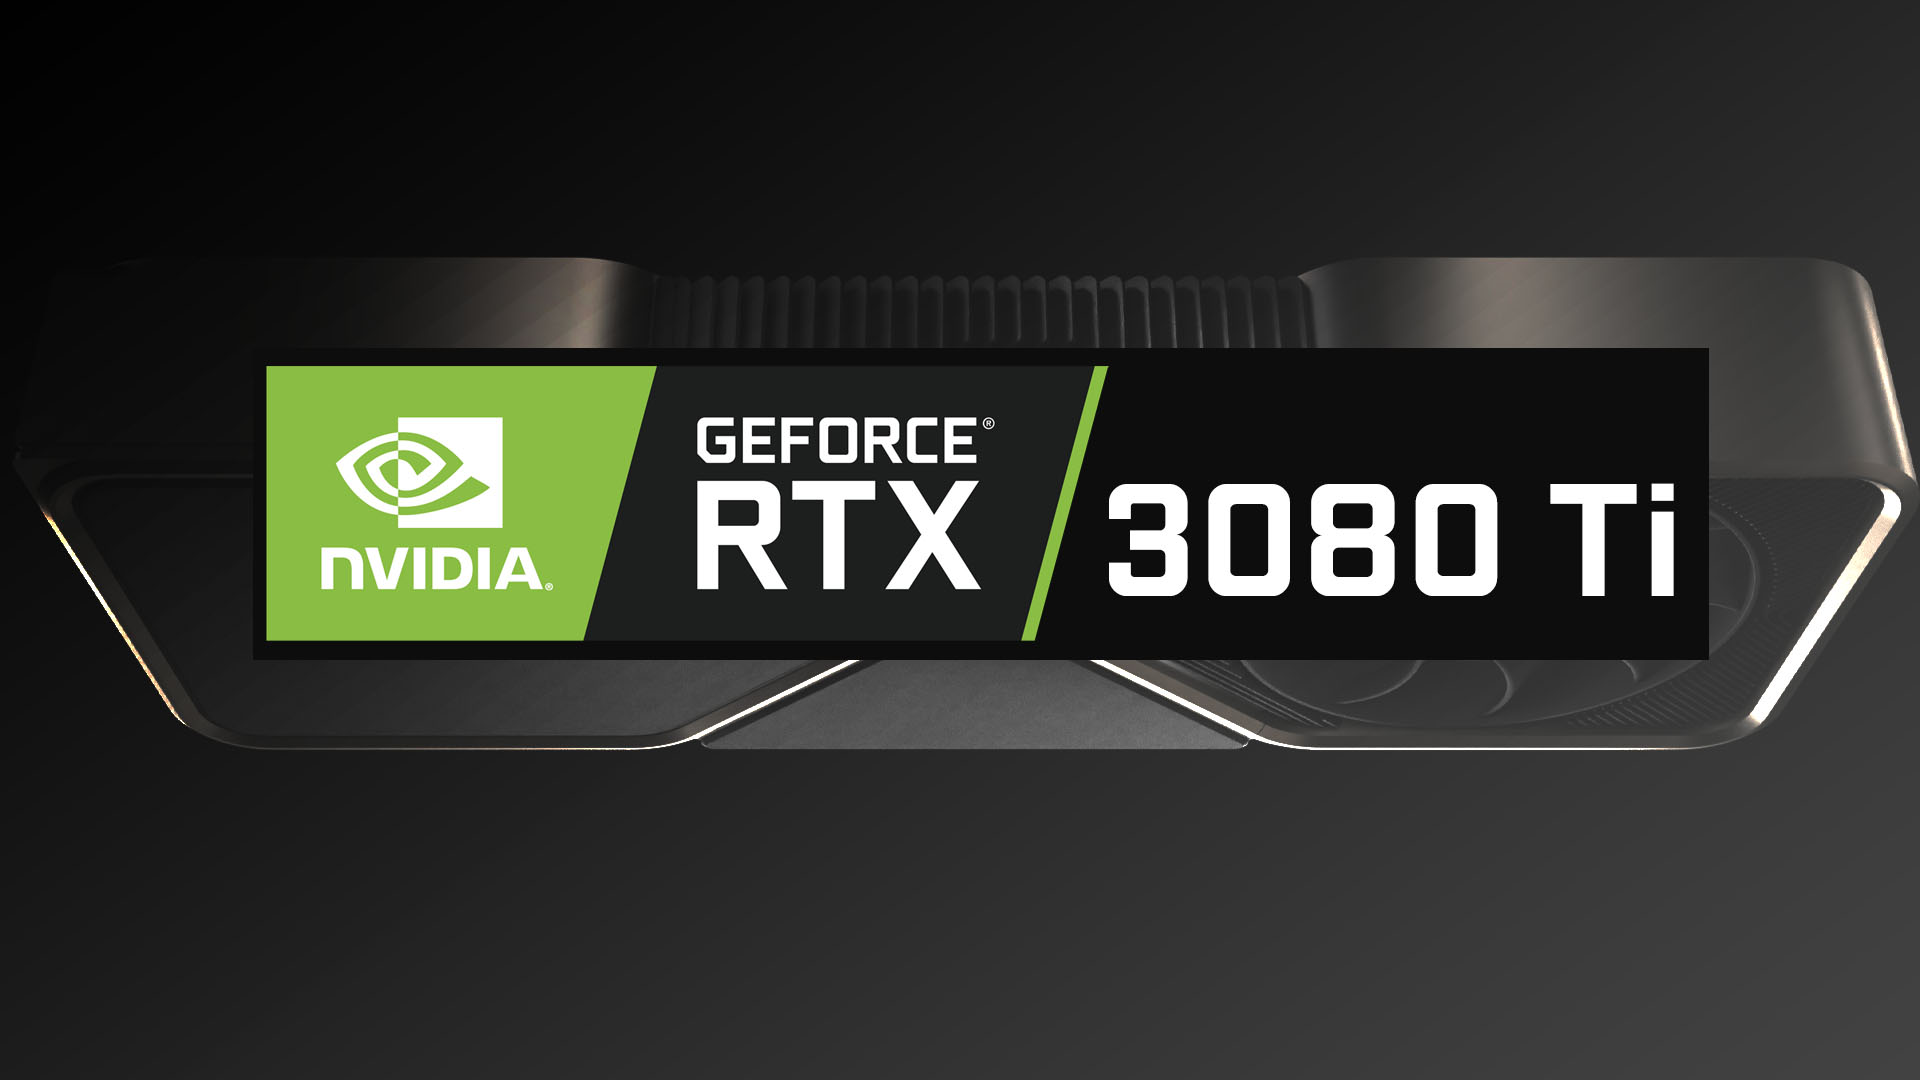 6月3日 22時発売、GeForce RTX 3080 Tiの仕様と予約在庫情報